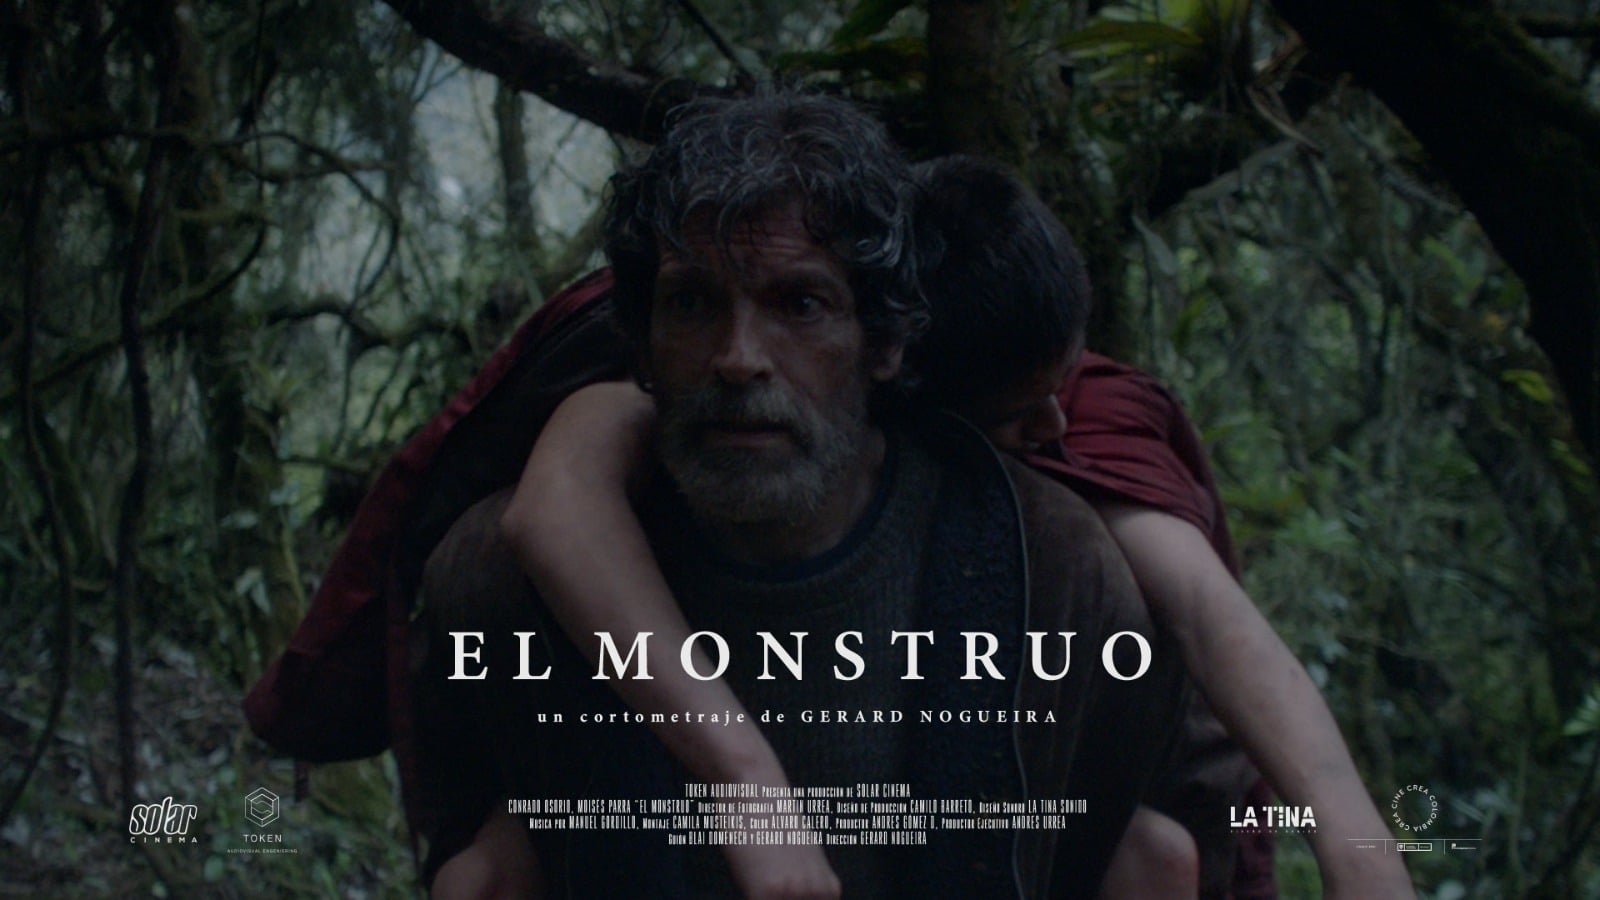 EL MONSTRUO, Gerard Nogueira [Trailer] on Vimeo